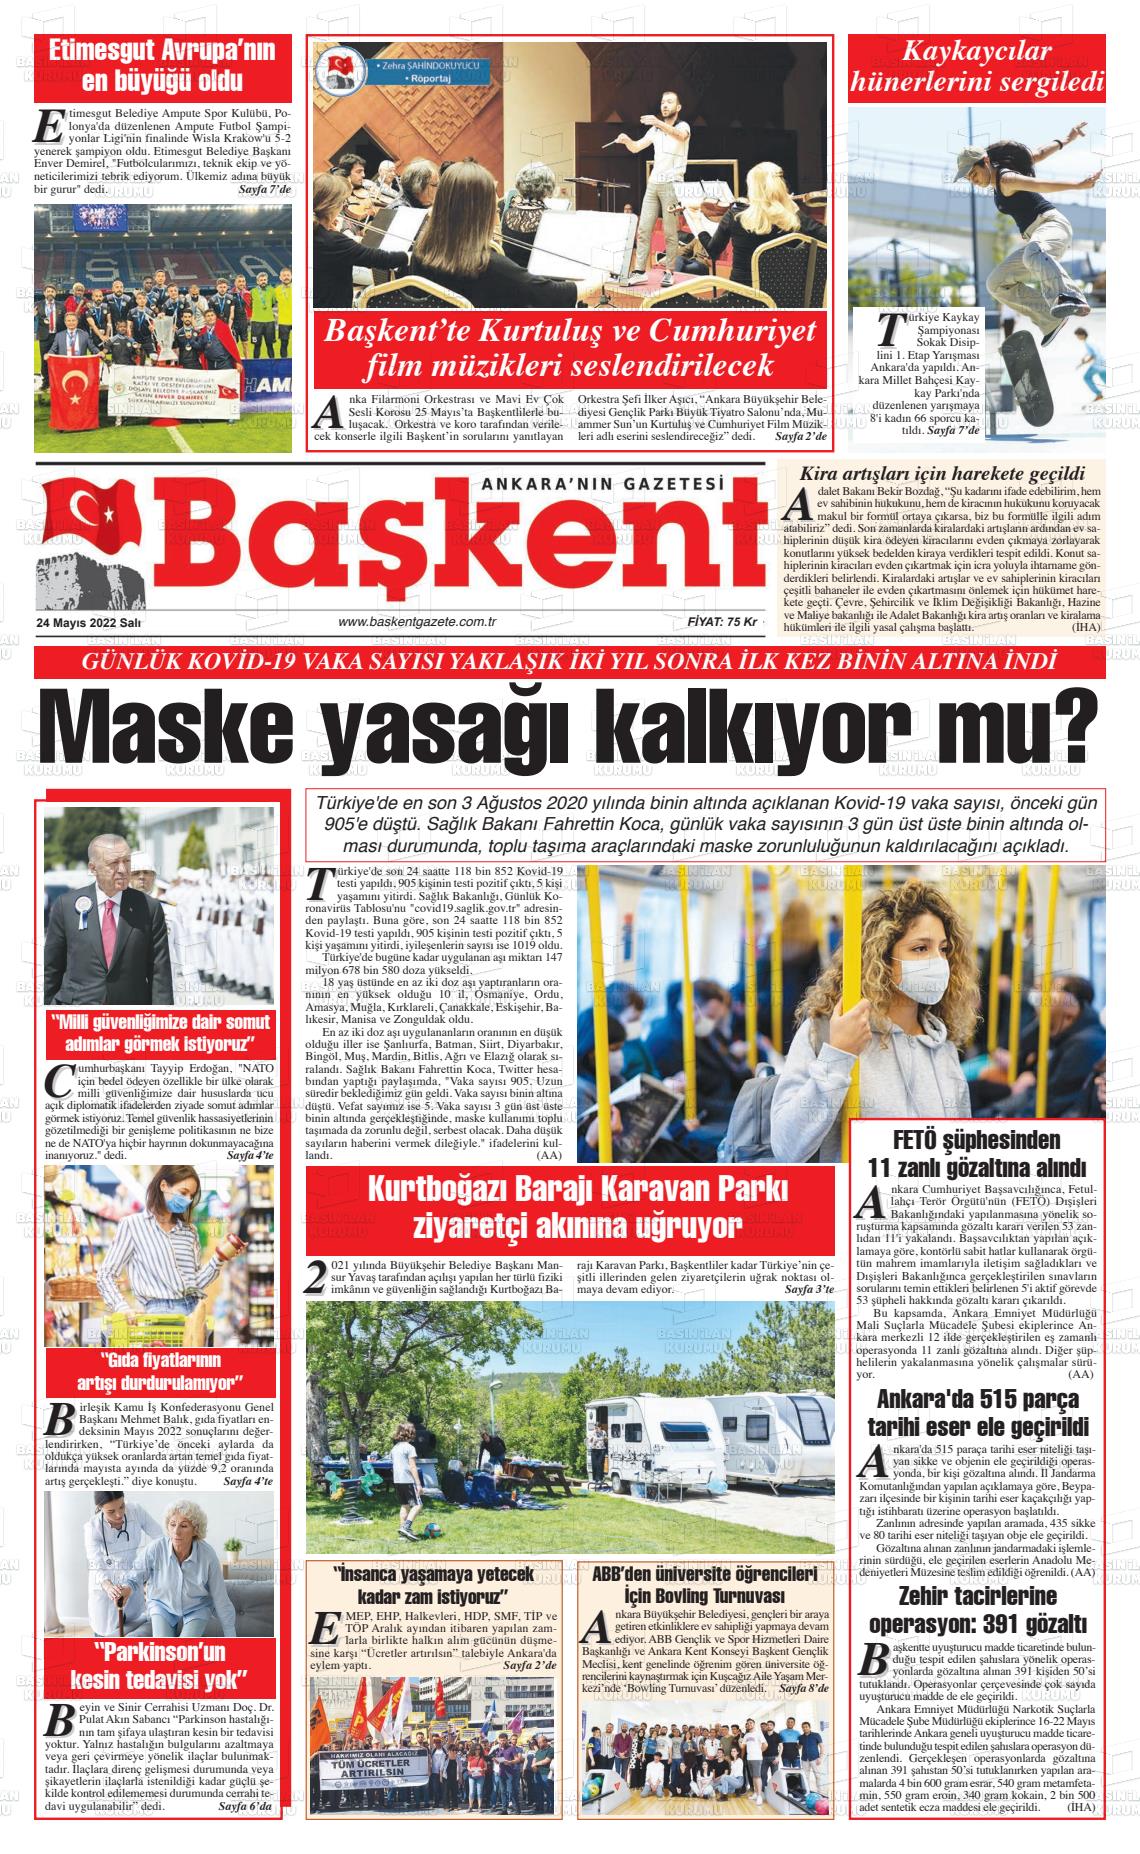 24 Mayıs 2022 Ankara Başkent Gazete Manşeti